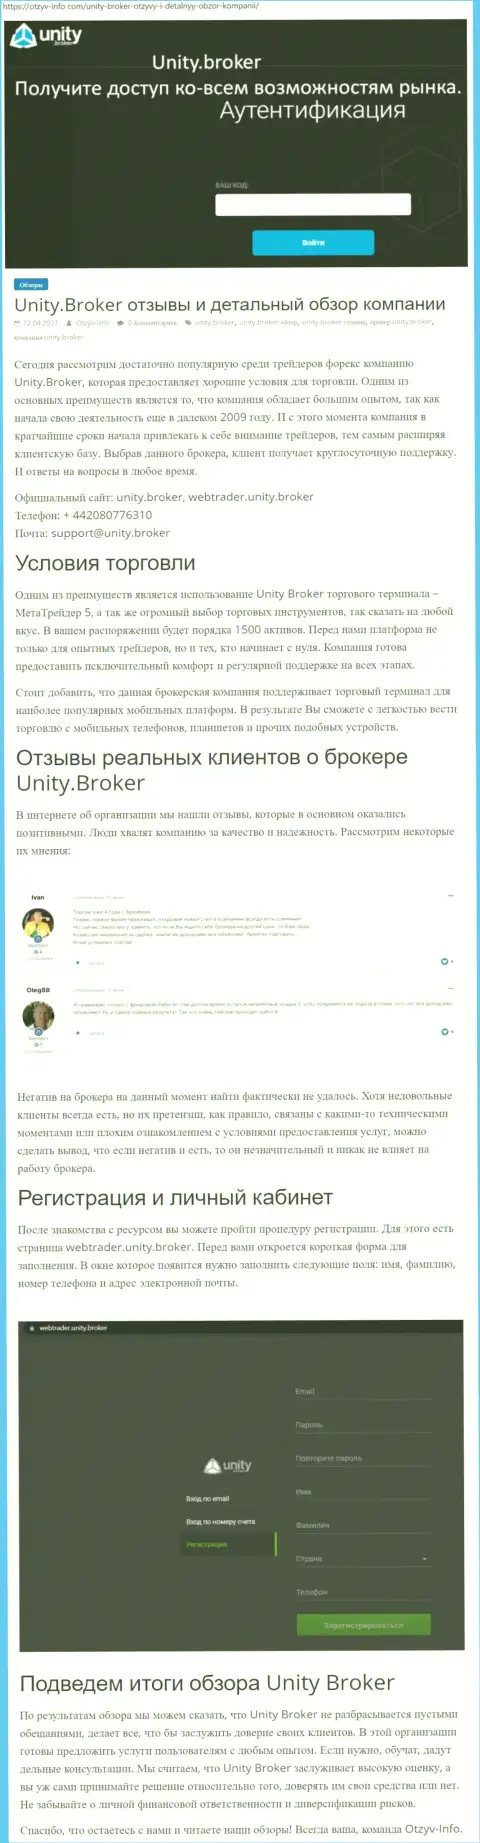 Обзор работы форекс-брокера Unity Broker на web-портале otzyv info com